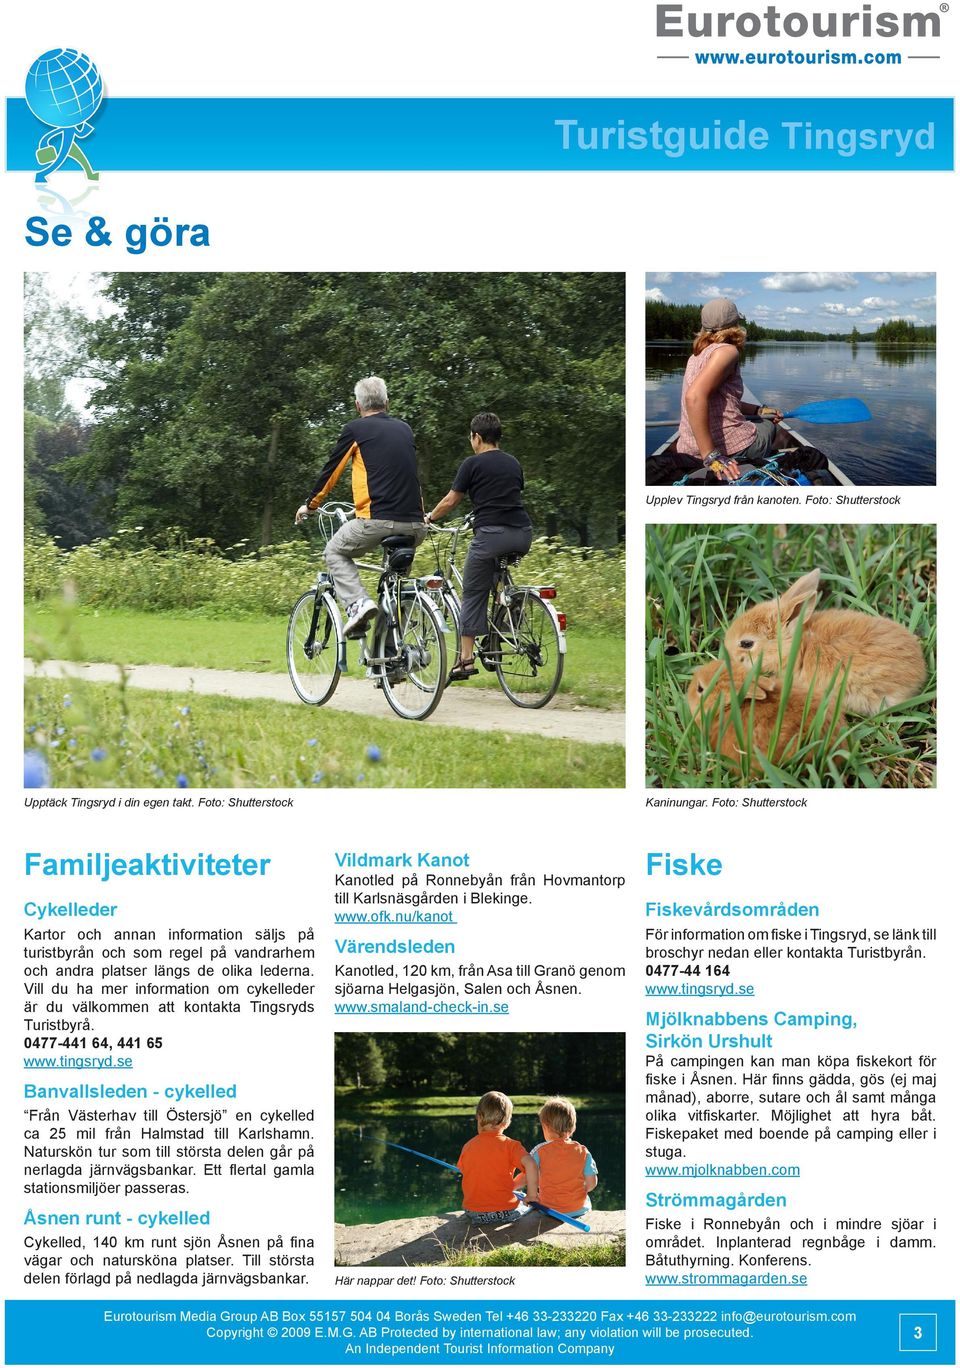 Vill du ha mer information om cykelleder är du välkommen att kontakta Tingsryds Turistbyrå. 0477-441 64, 441 65 Kaninungar.